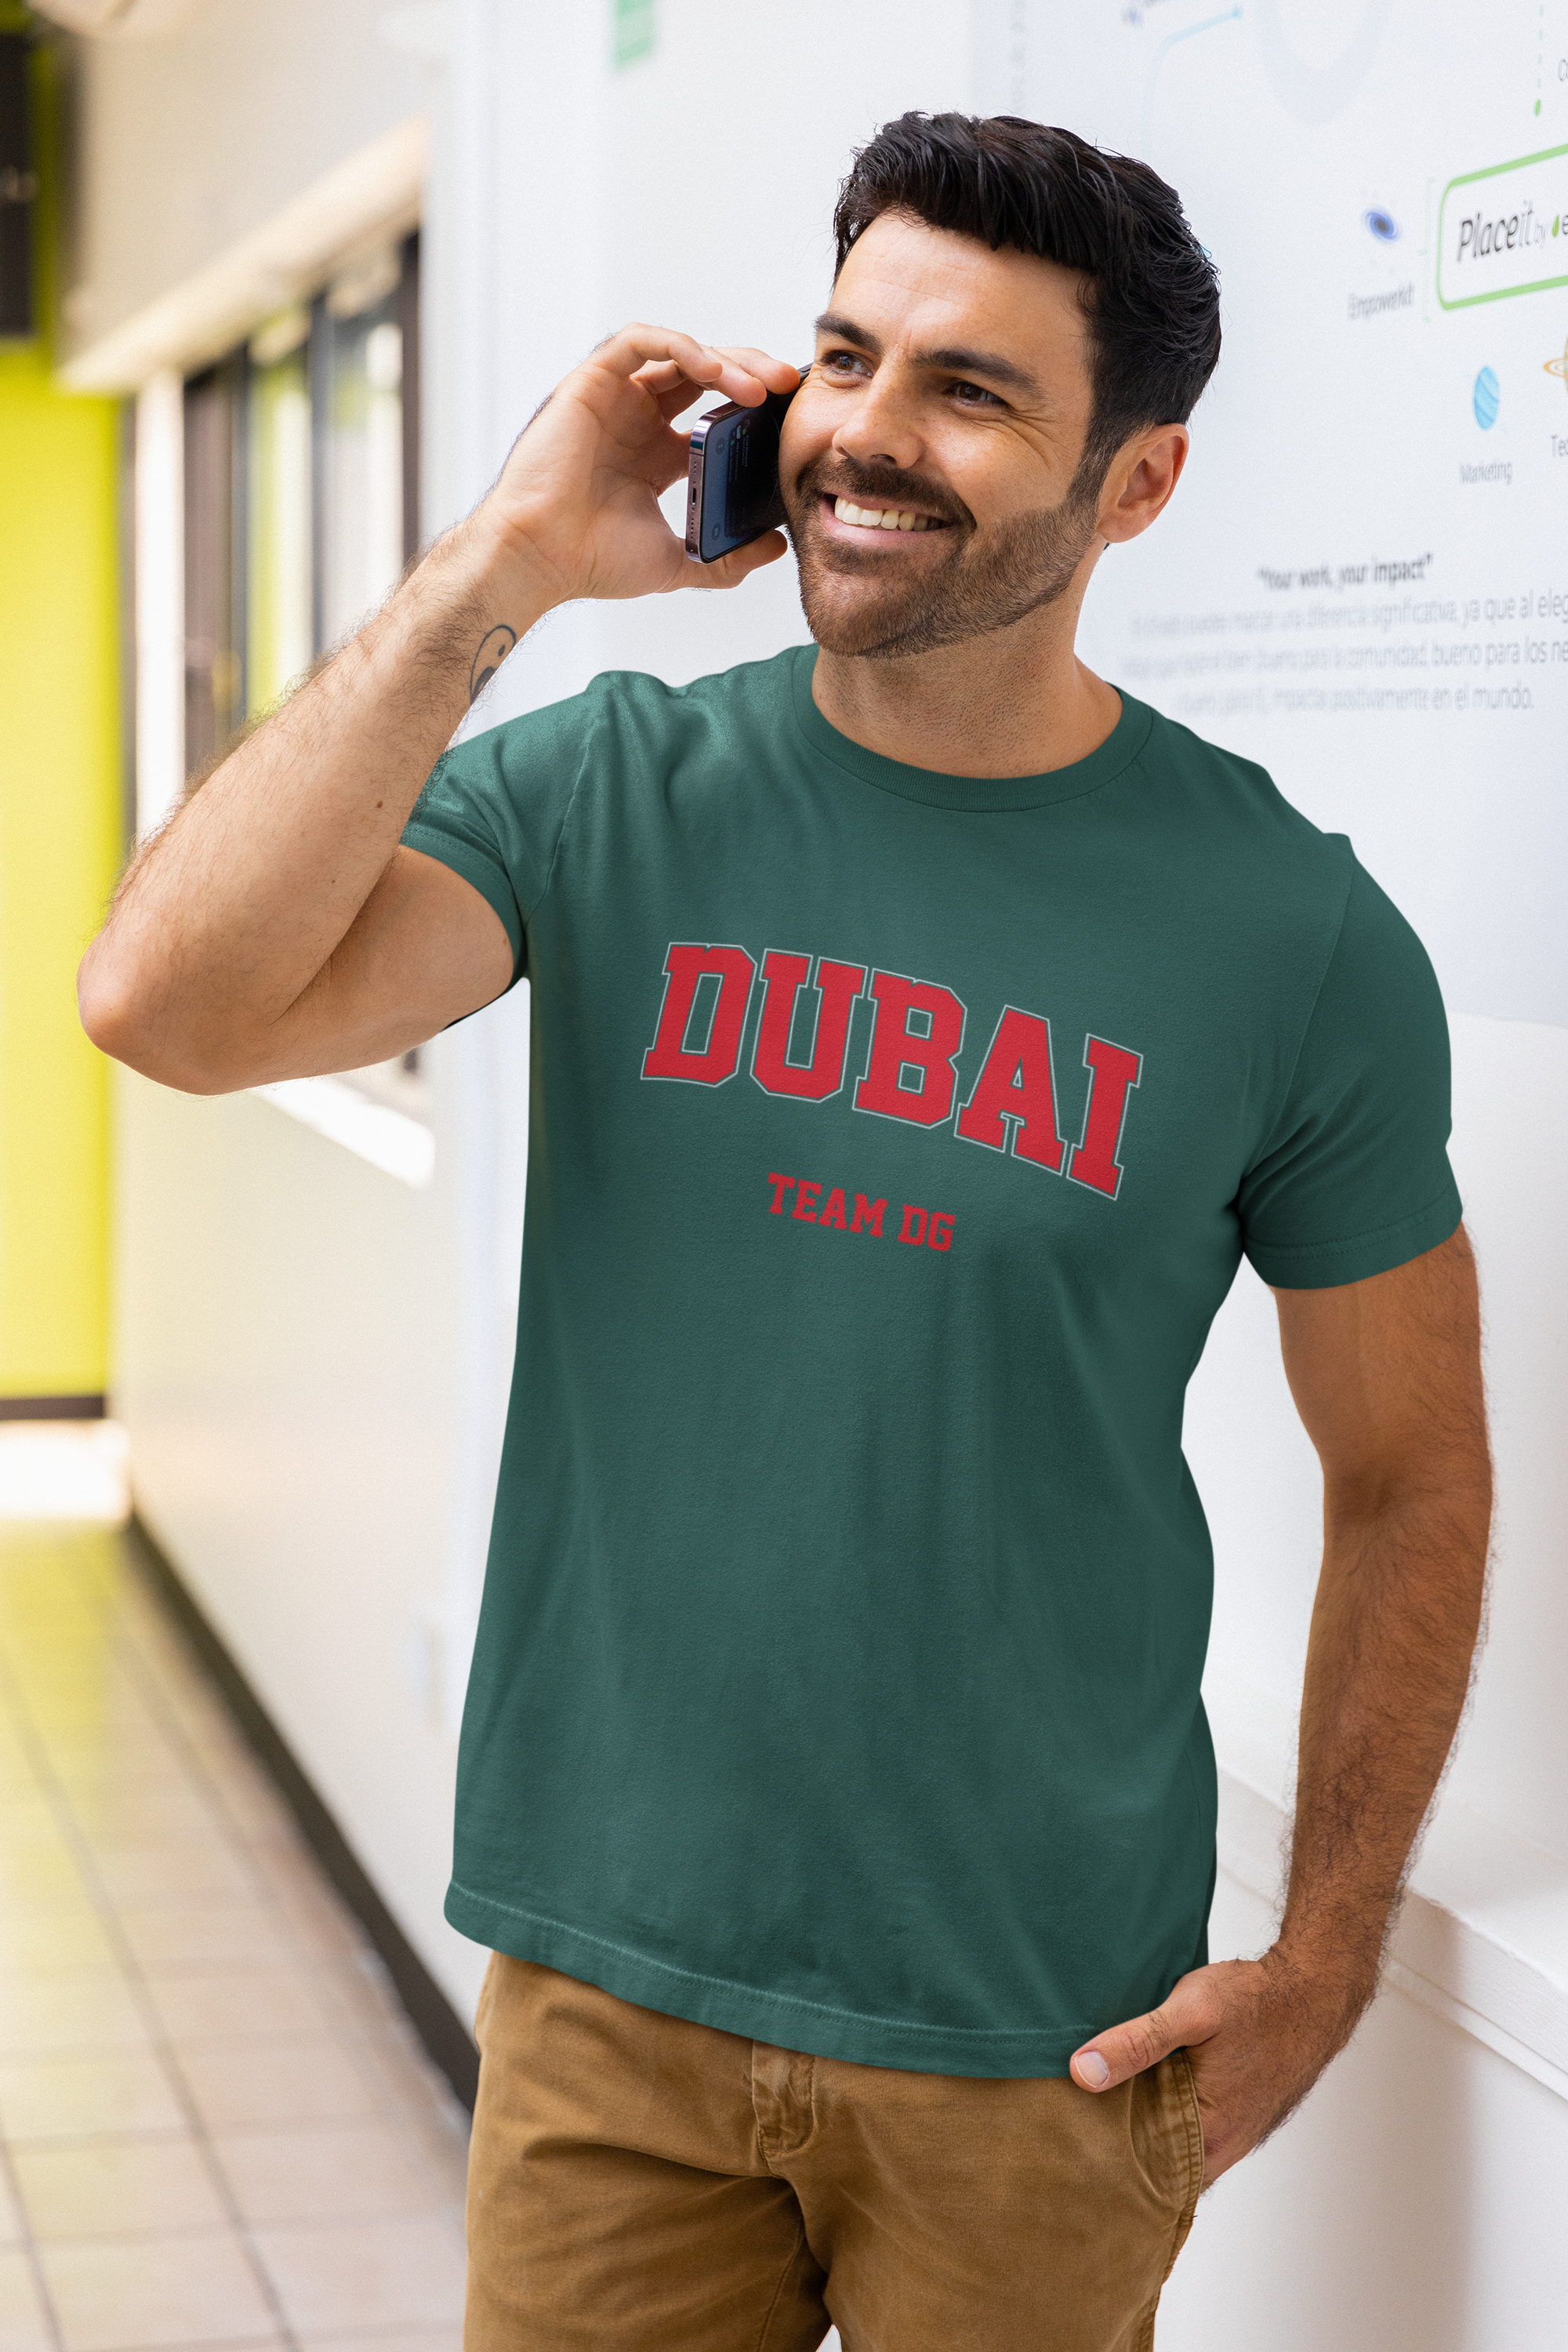 "DUBAI Team DG" - Shirt Man (Rot/Weiss)